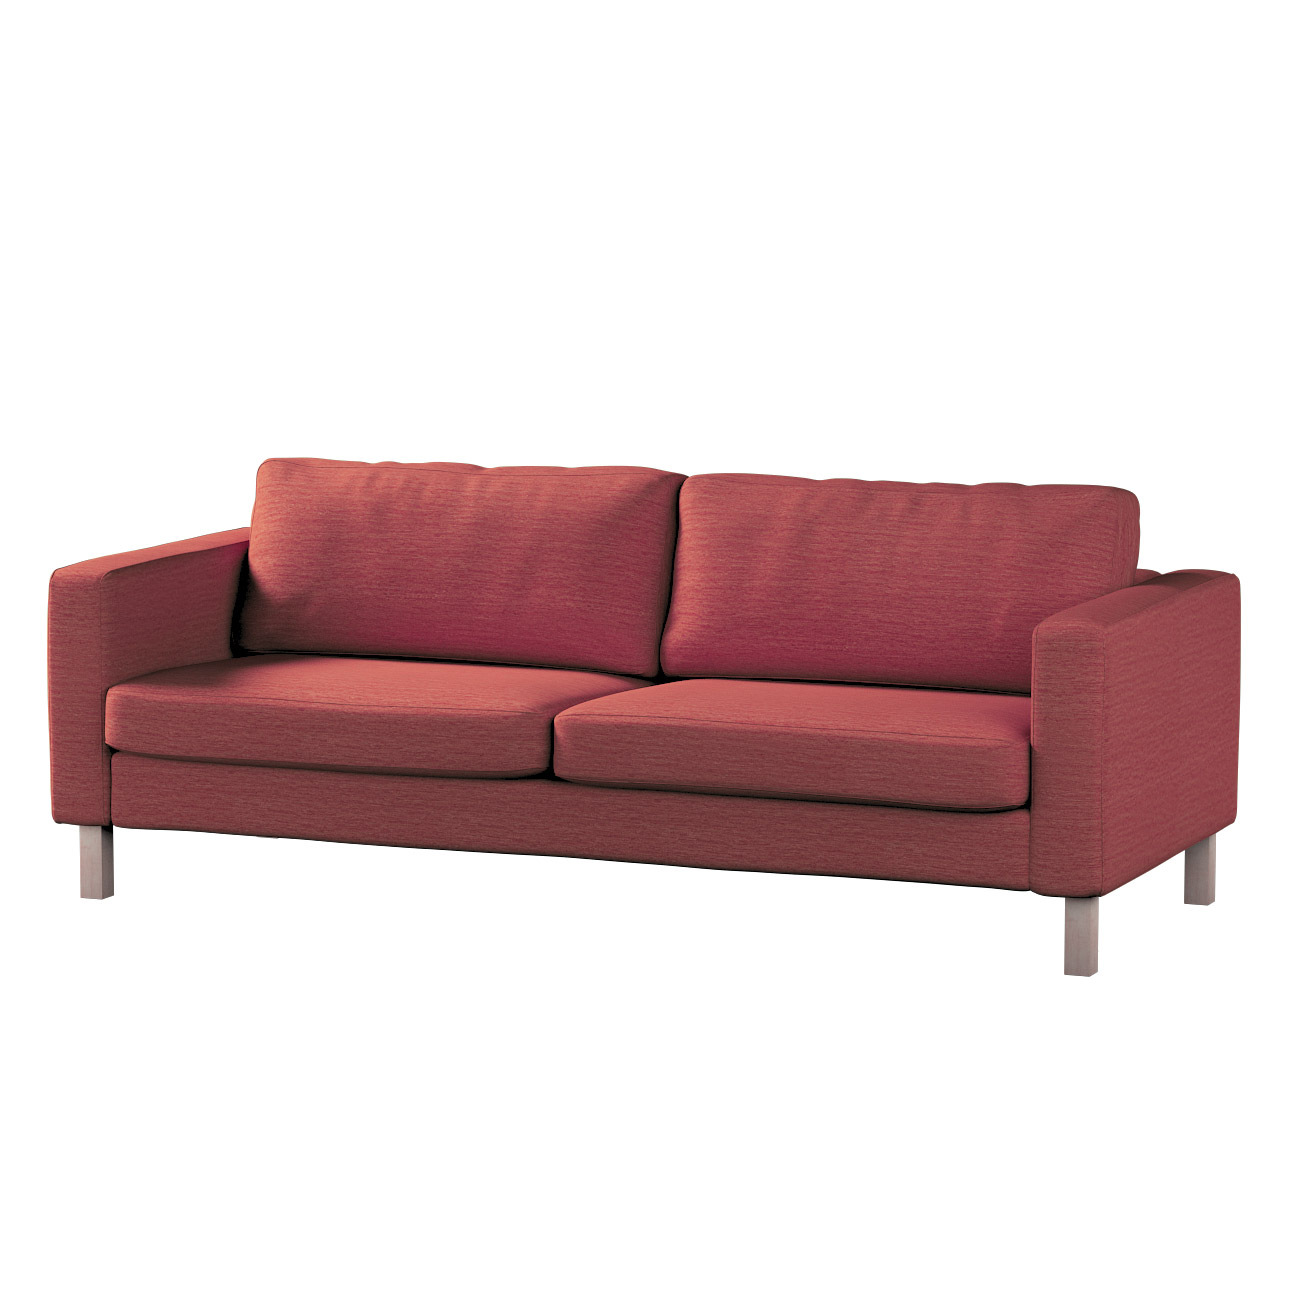 Bezug für Karlstad 3-Sitzer Sofa nicht ausklappbar, kurz, ziegelrot, Bezug günstig online kaufen